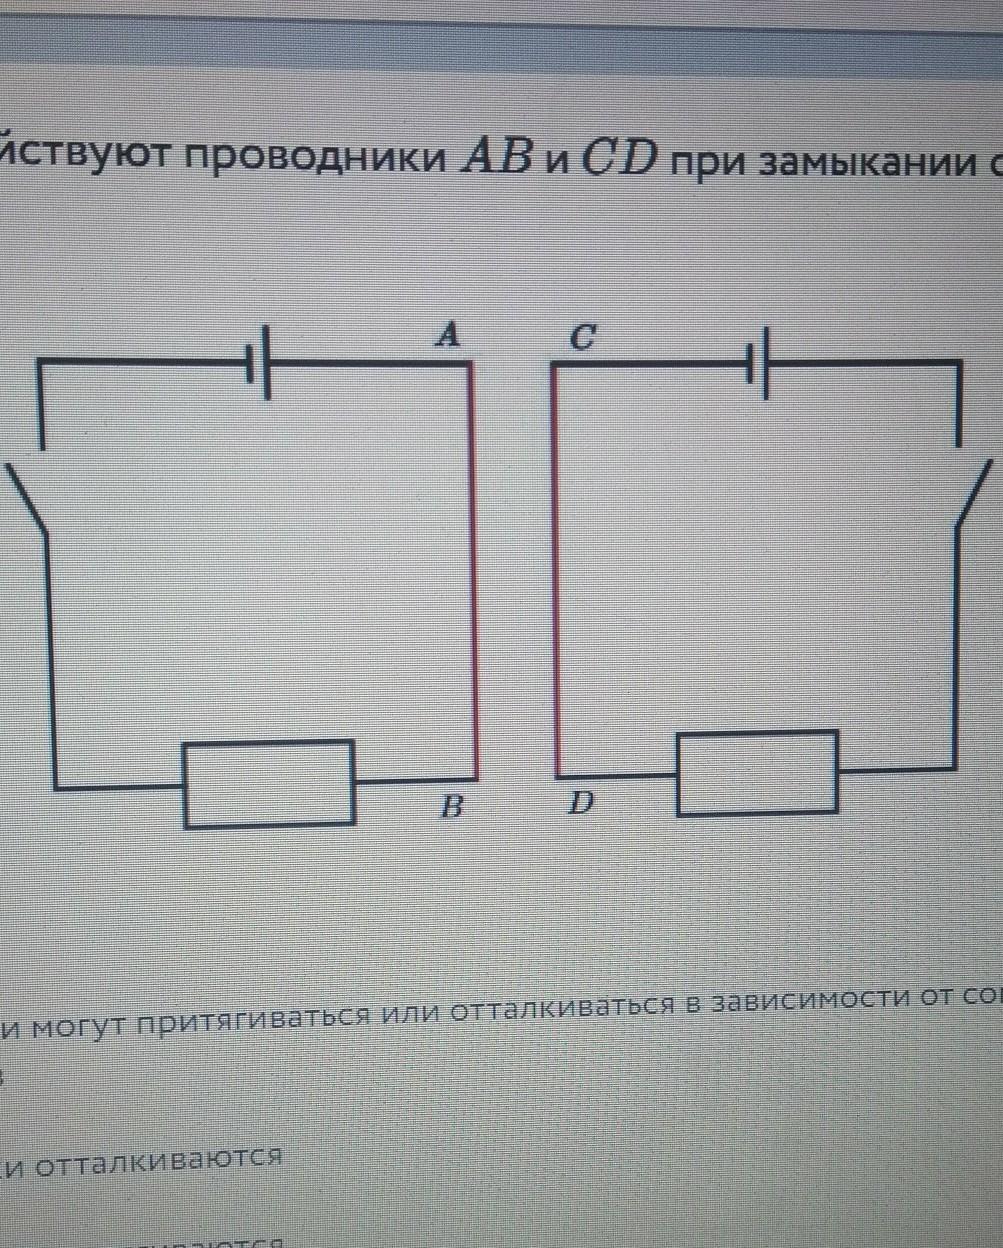 Сд проводник. Короткое замыкание в проводнике. Как взаимодействуют проводники аб и СД при замыкании обеих цепей. Как взаимодействуют проводники 1. x1.